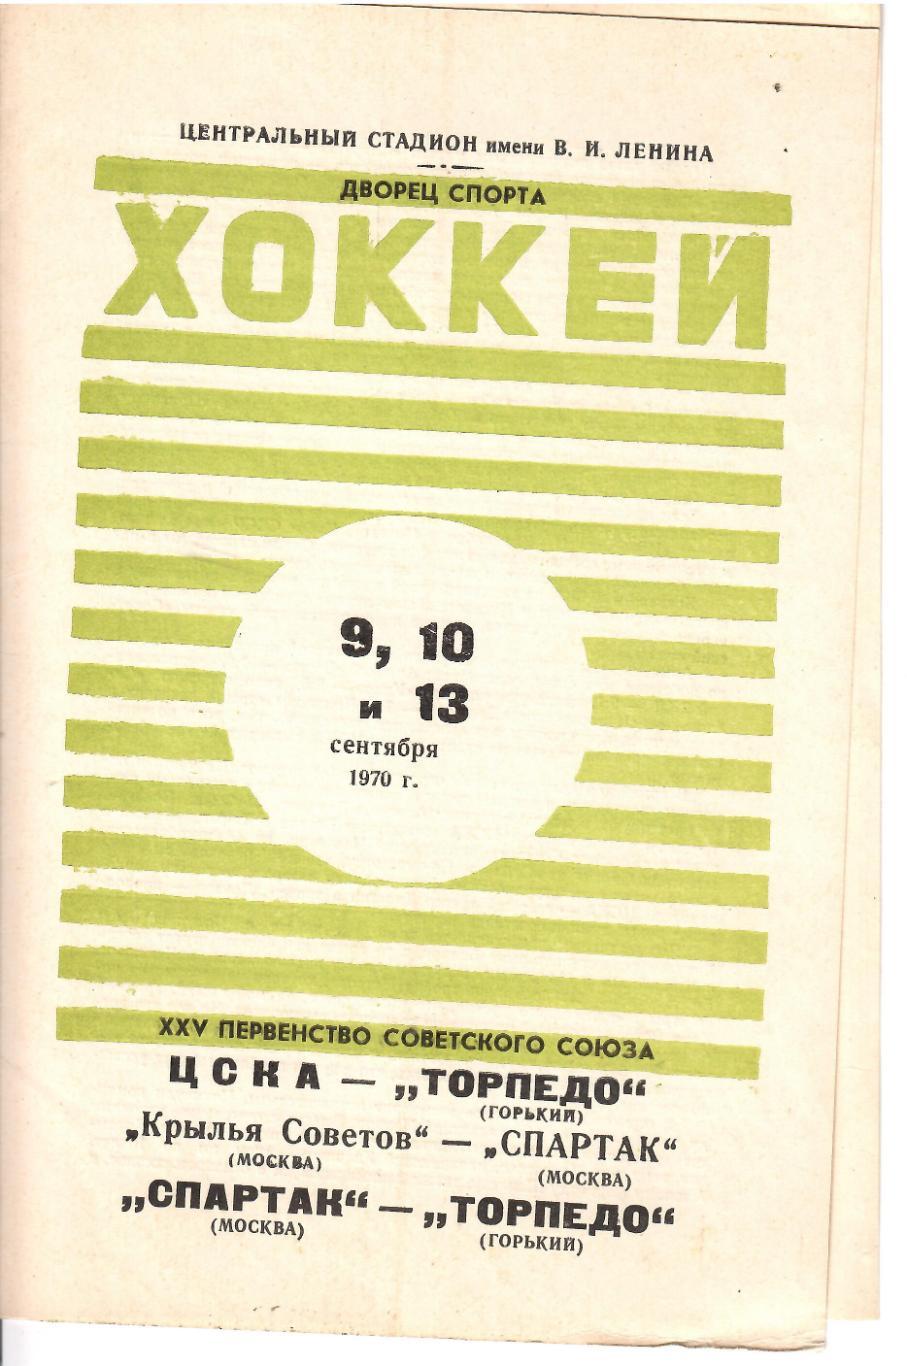 1970 Хоккей ЦСКА - Торпедо - Крылья Советов - Спартак Москва